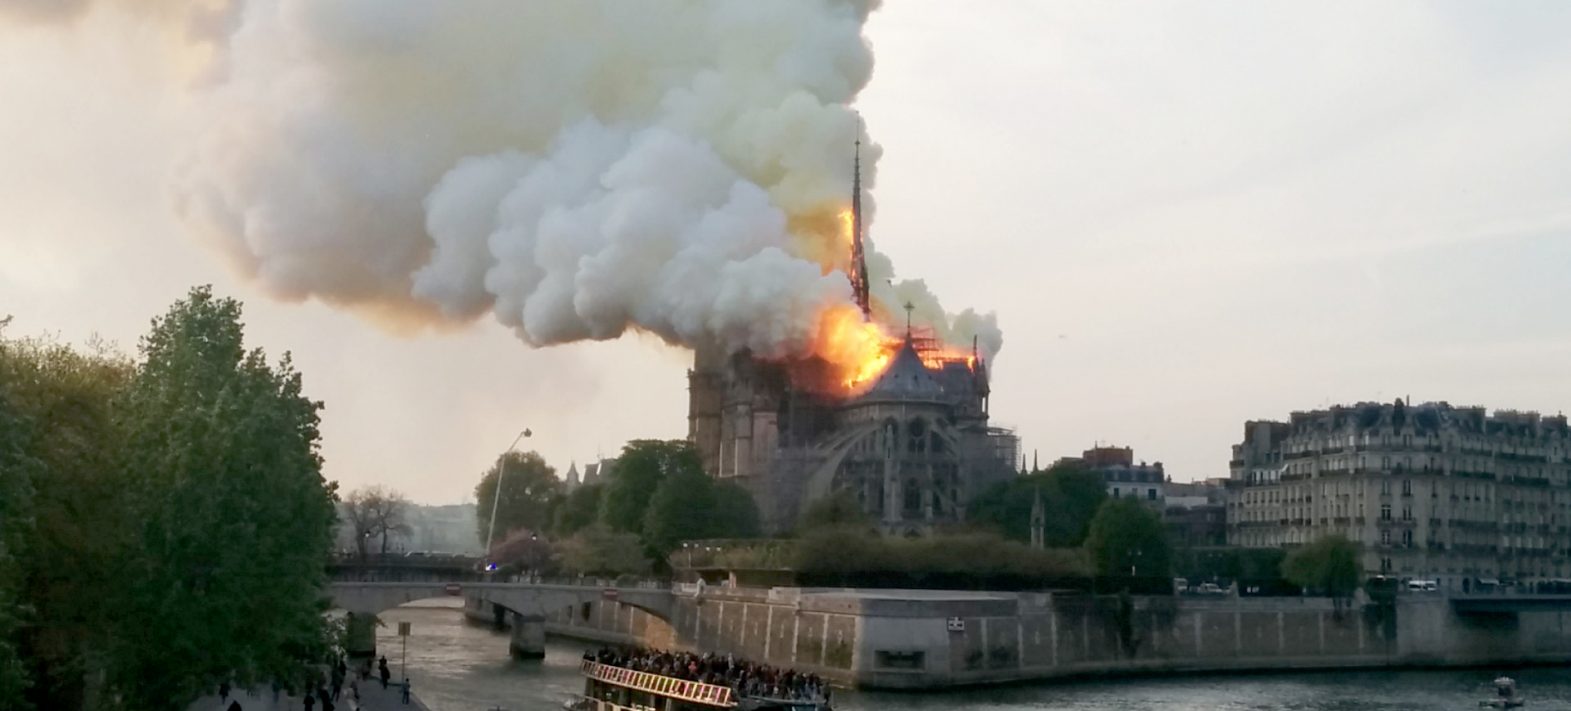 Les retombées de plomb liées à l’incendie de Notre Dame cartographiées dans le miel